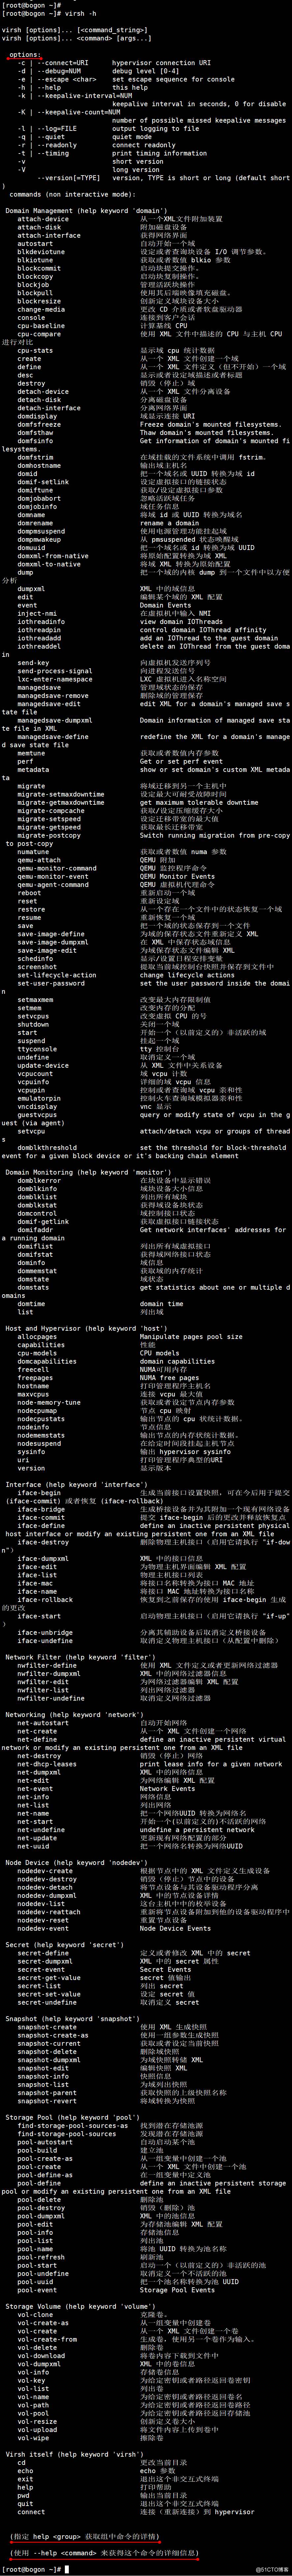 linux find 多个文件_linux find过滤文件夹_linux find 排除文件